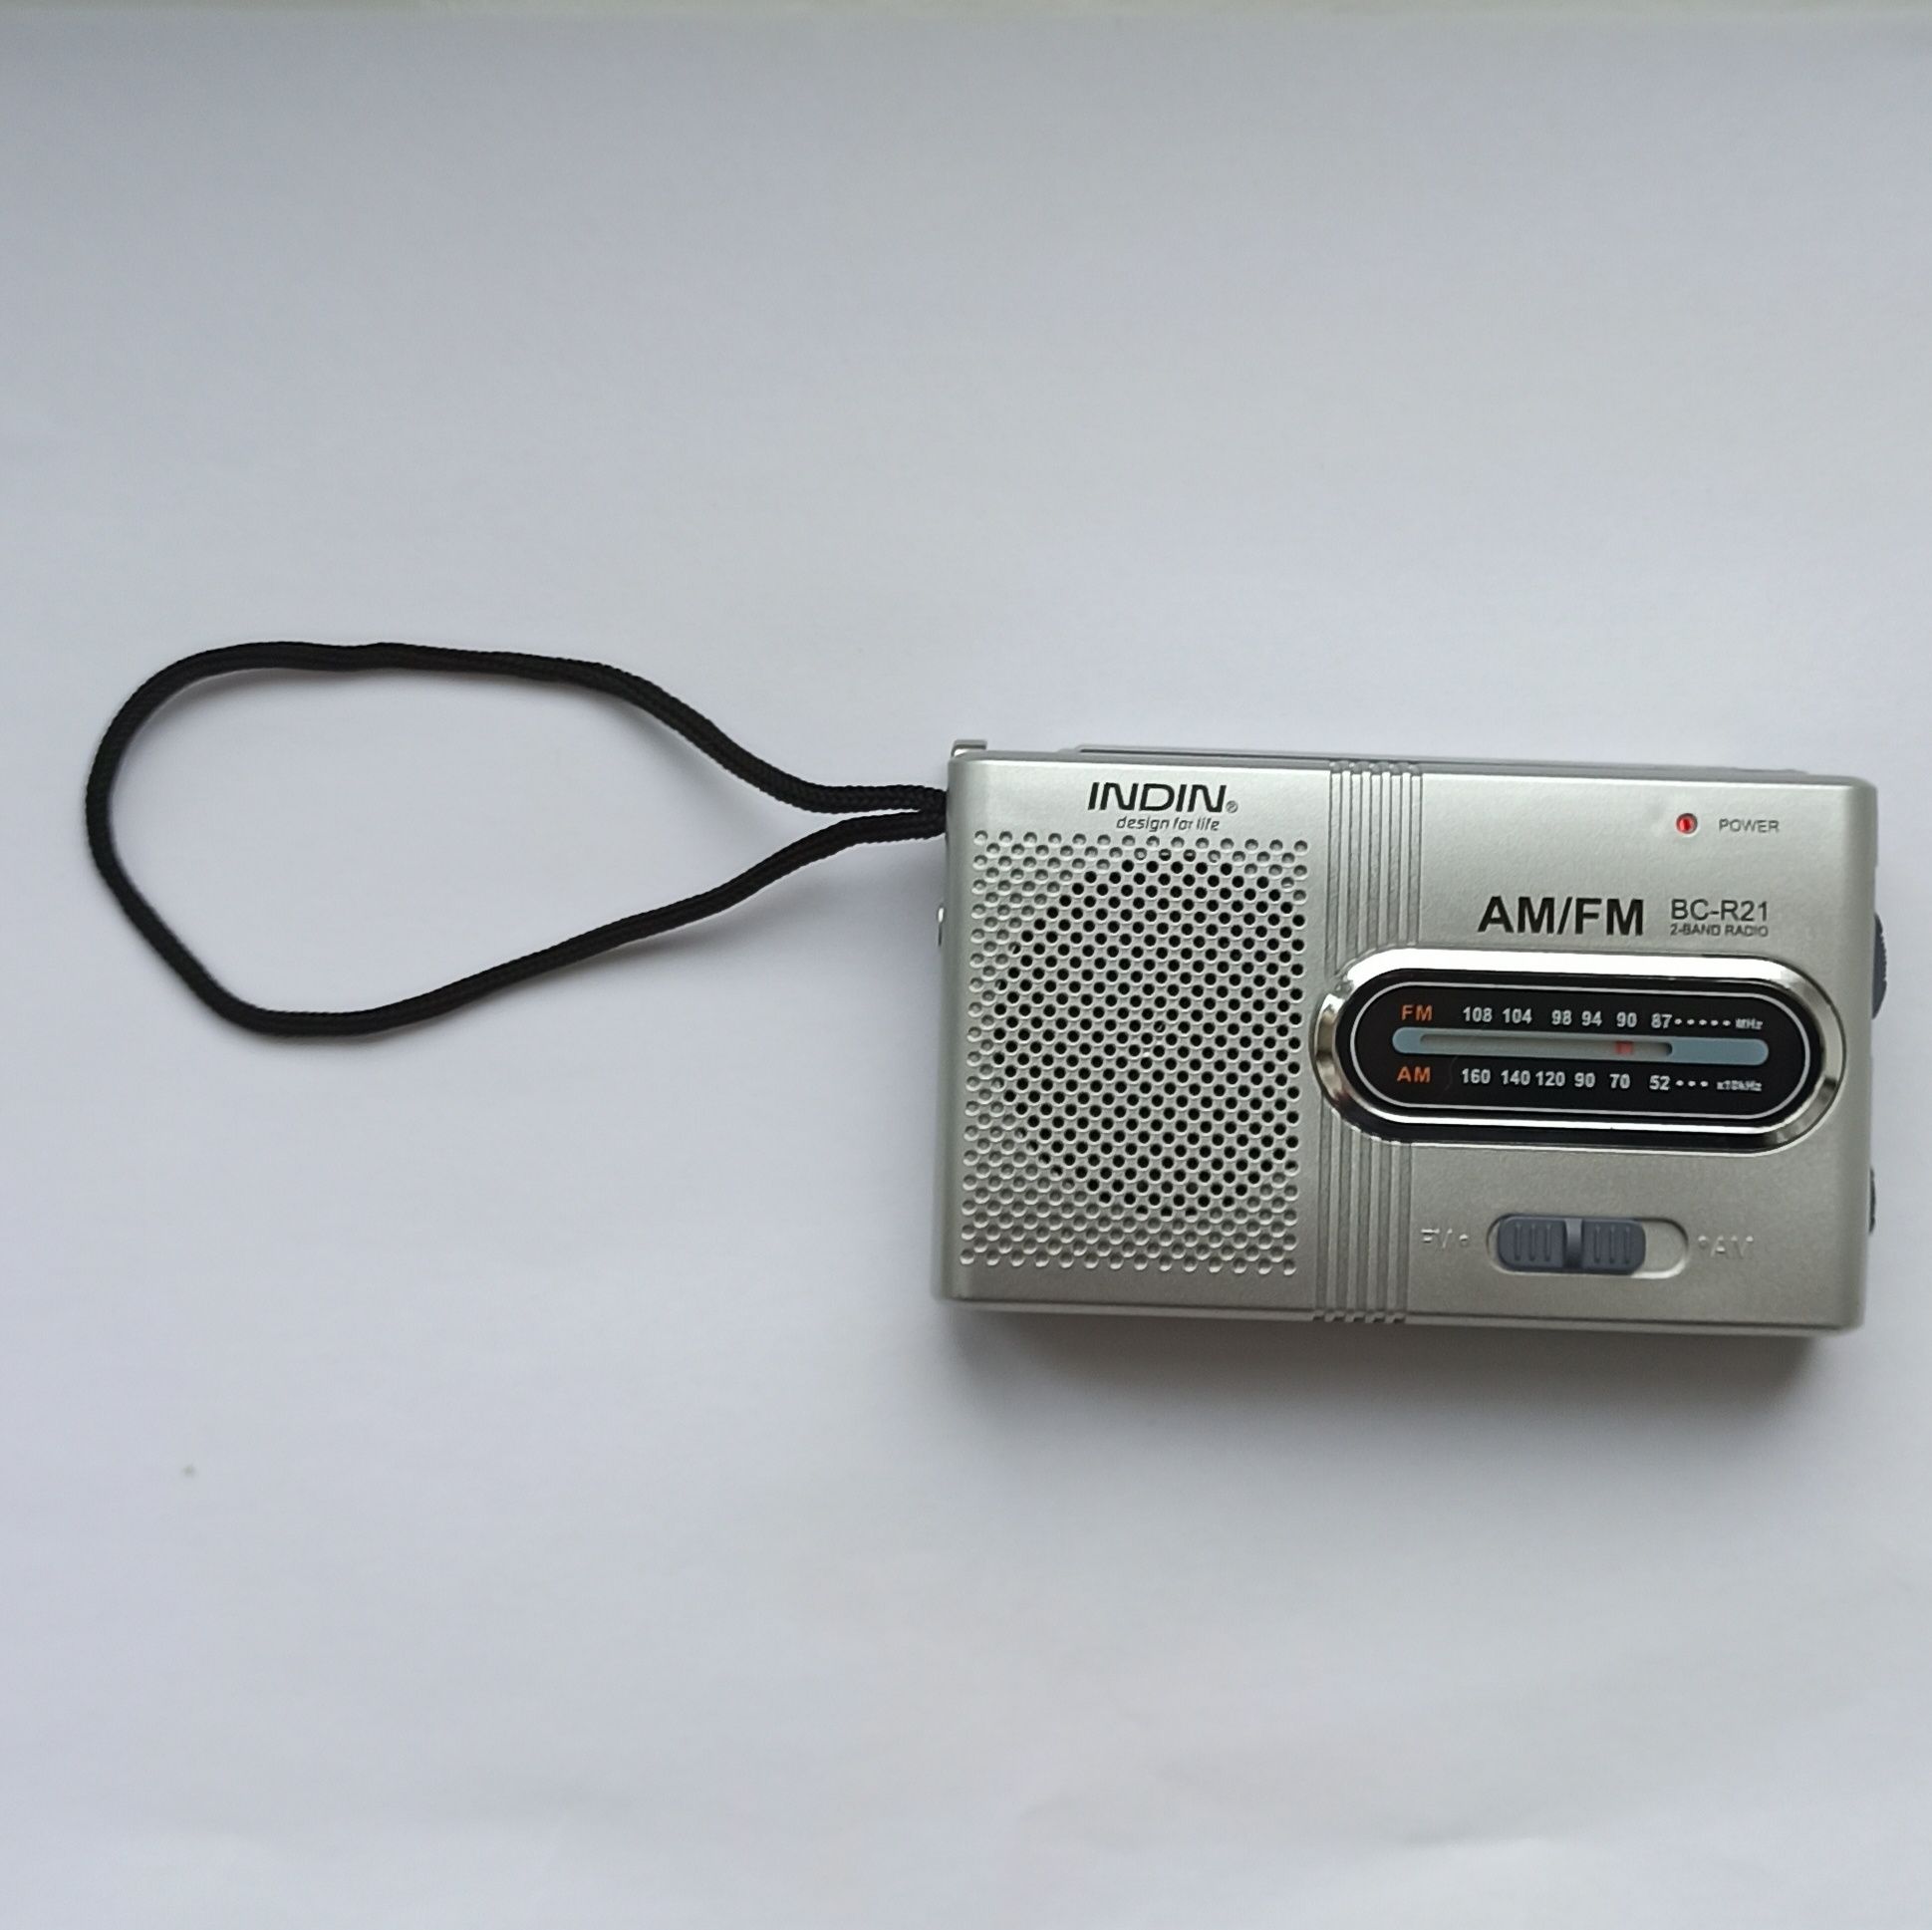 Похідне радіо Mini radio indin, кишенькове радіо, міні радіо